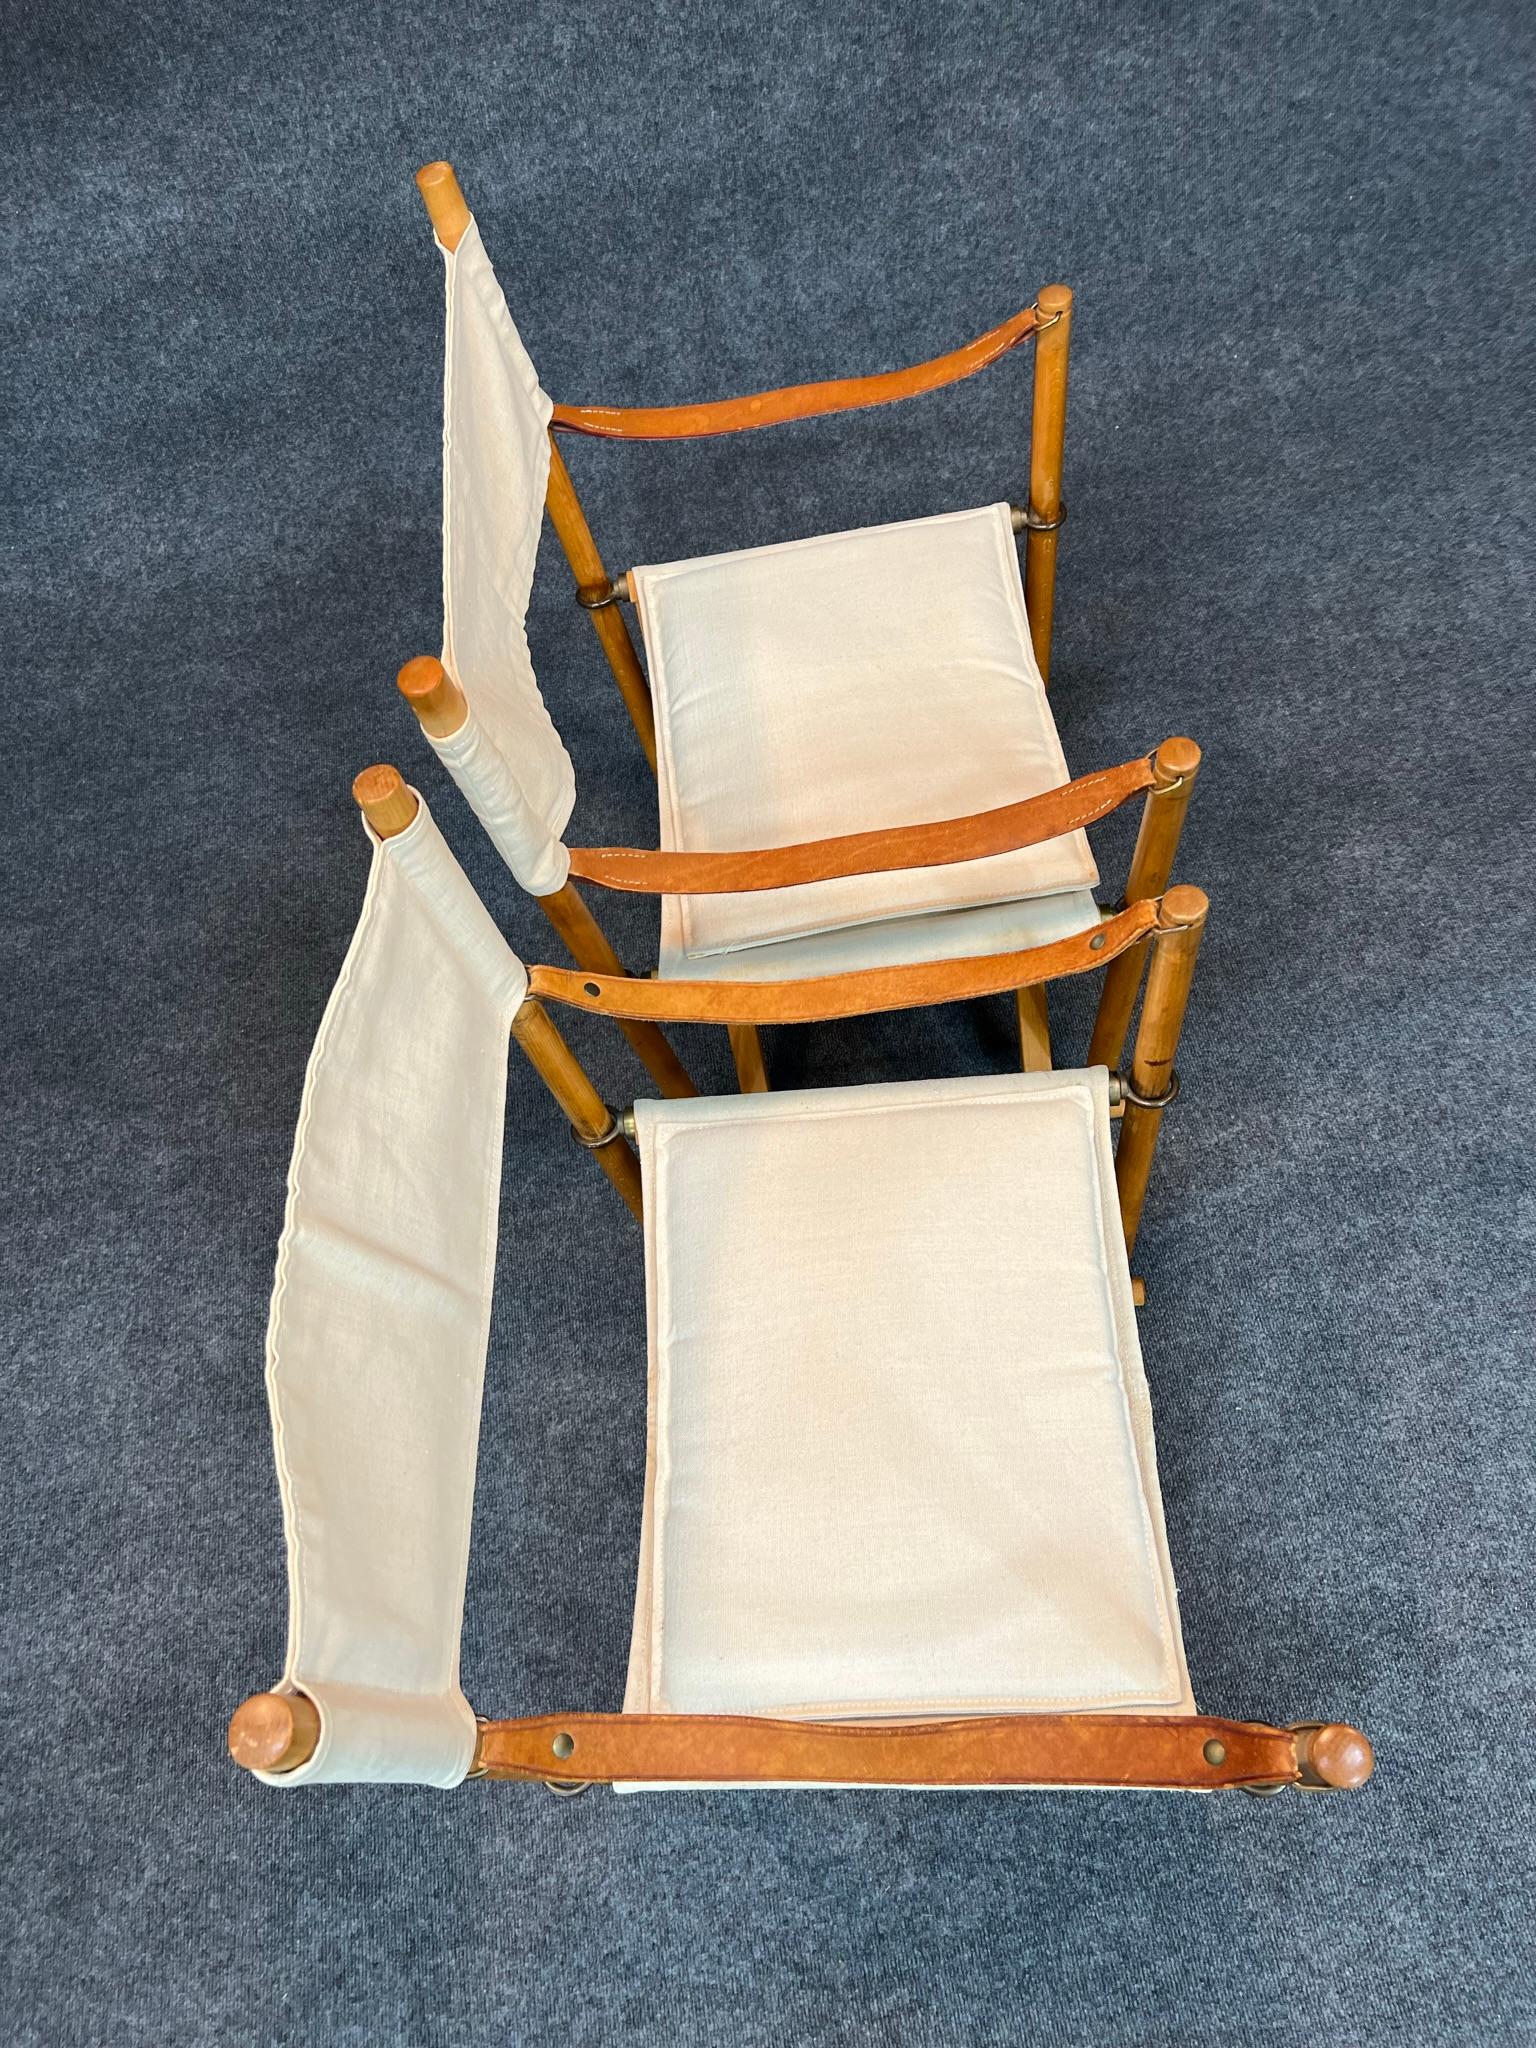 Paire de chaises safari pliantes danoises modernes (Design/One) conçues par Mogens Koch en 1932, l'une fabriquée par Rud. Rasmussen et l'autre par Cado. Naturellement en bois de hêtre et en laiton. Dossier, assise et coussins en toile légère.